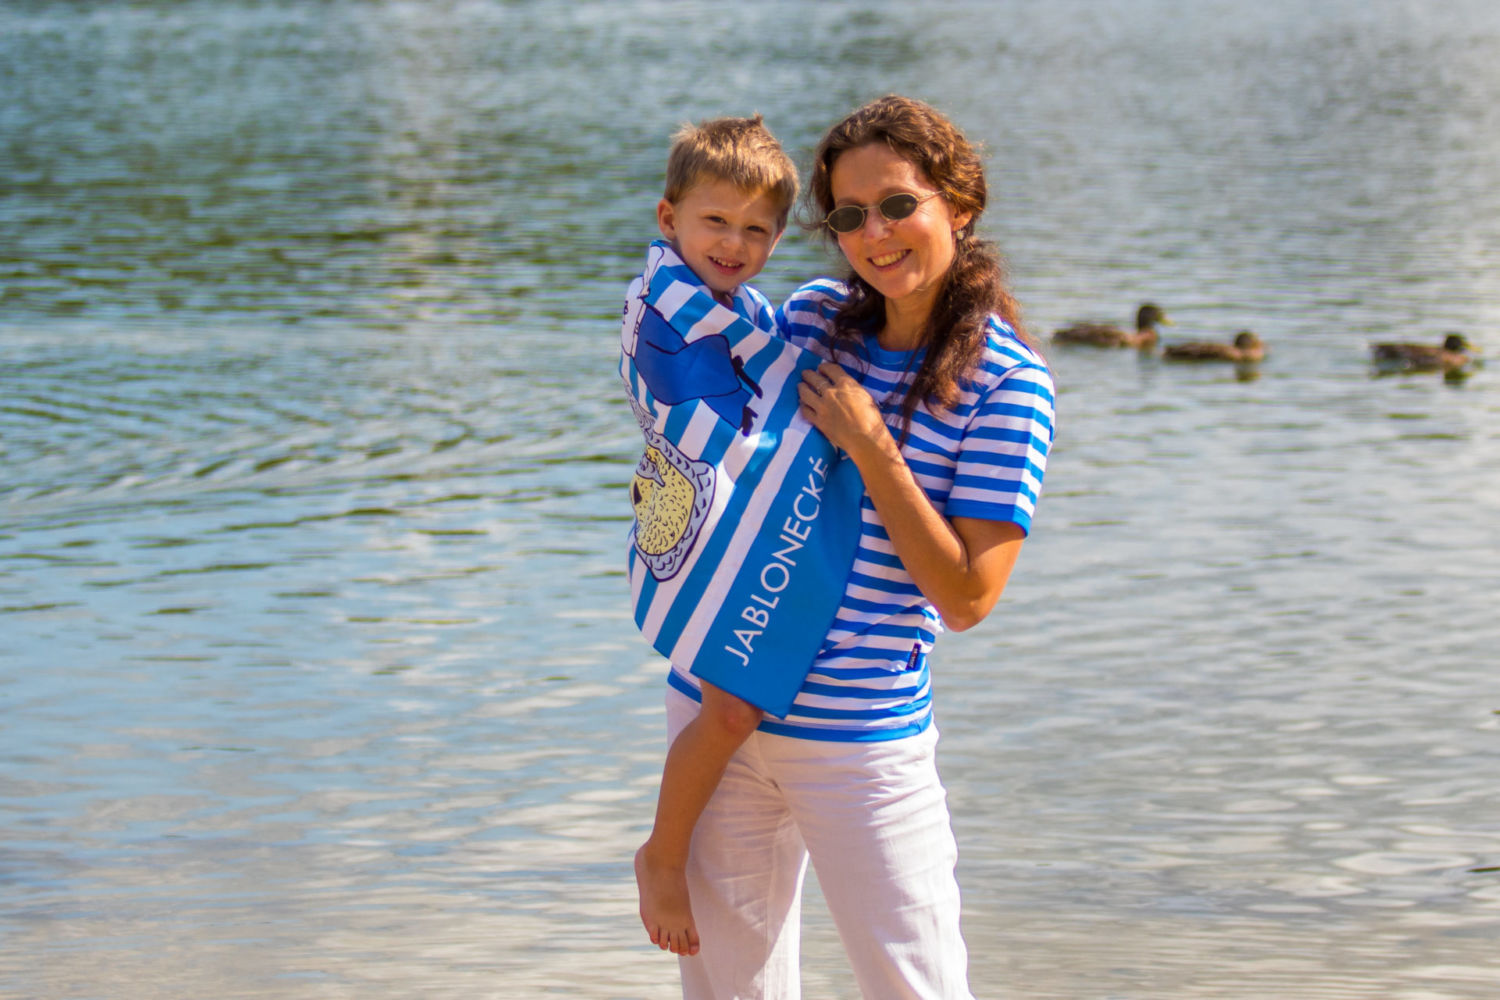 Maminka v pruhovaném tričku držící dítě v ručníku na břehu jablonecké přehrady Mšeno